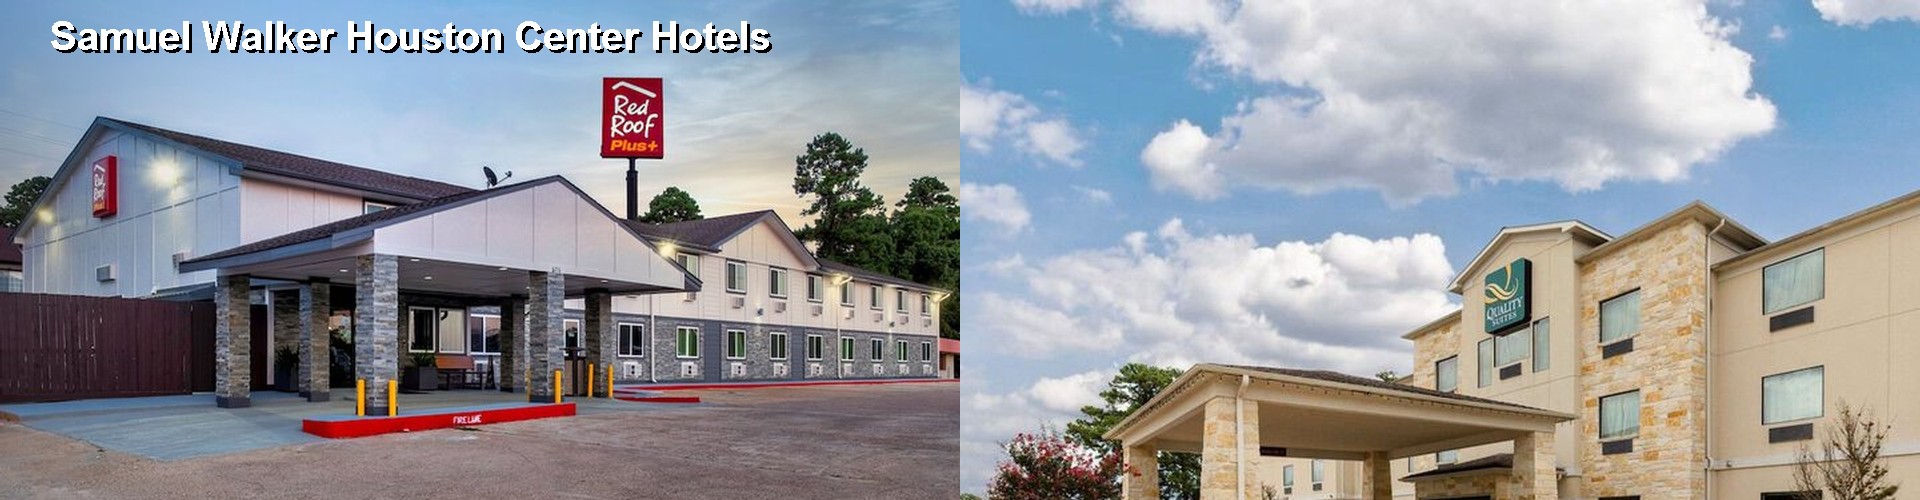 4 Best Hotels near Samuel Walker Houston Center